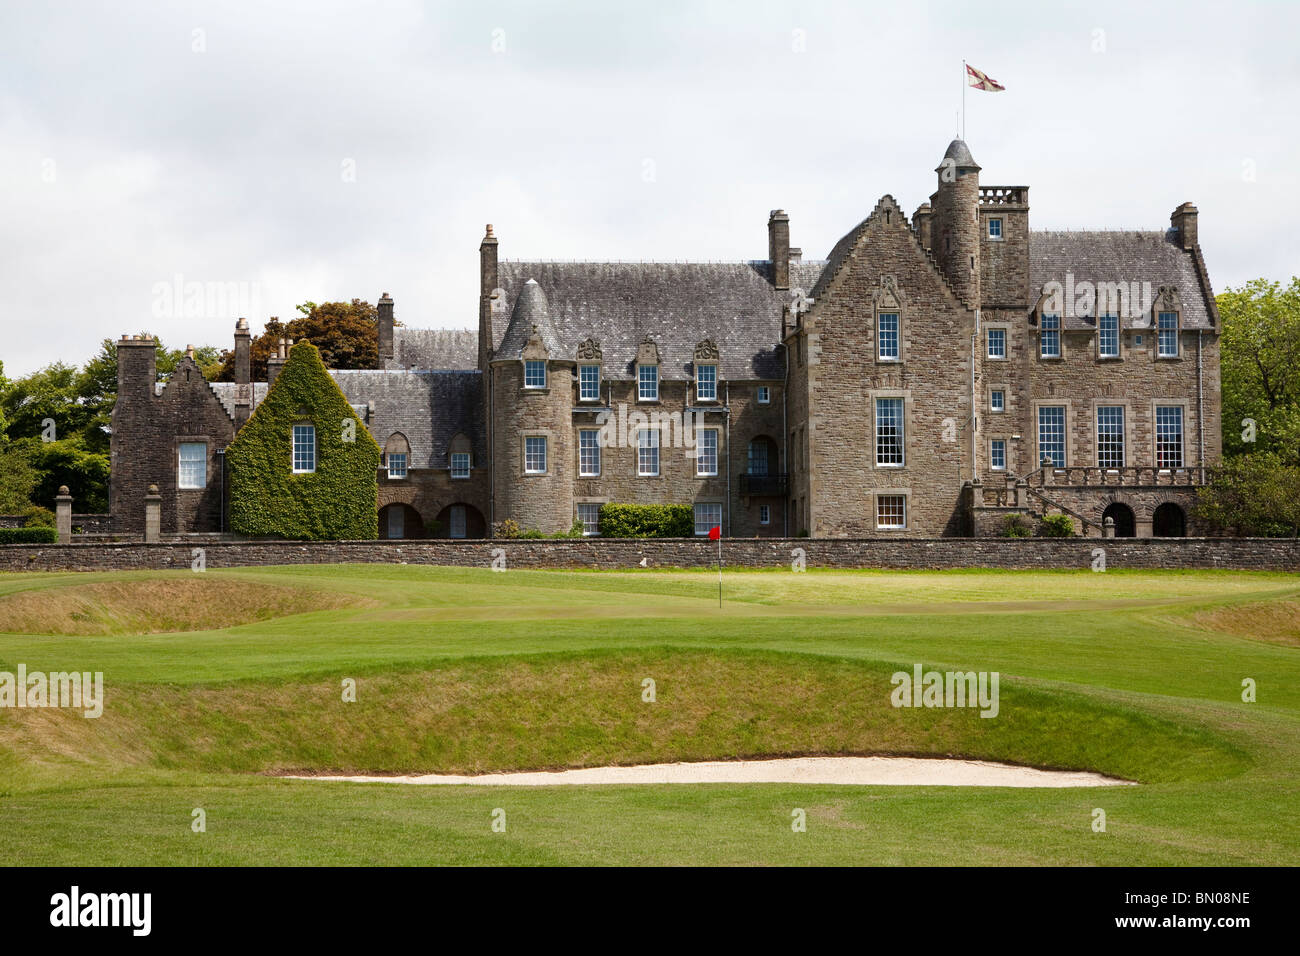 Rowallan Castle, Golfclub in der Nähe von Kilmaurs, Ayrshire, Schottland. Blick auf das 18. Grün. Kurs von Colin Montgomery. Stockfoto